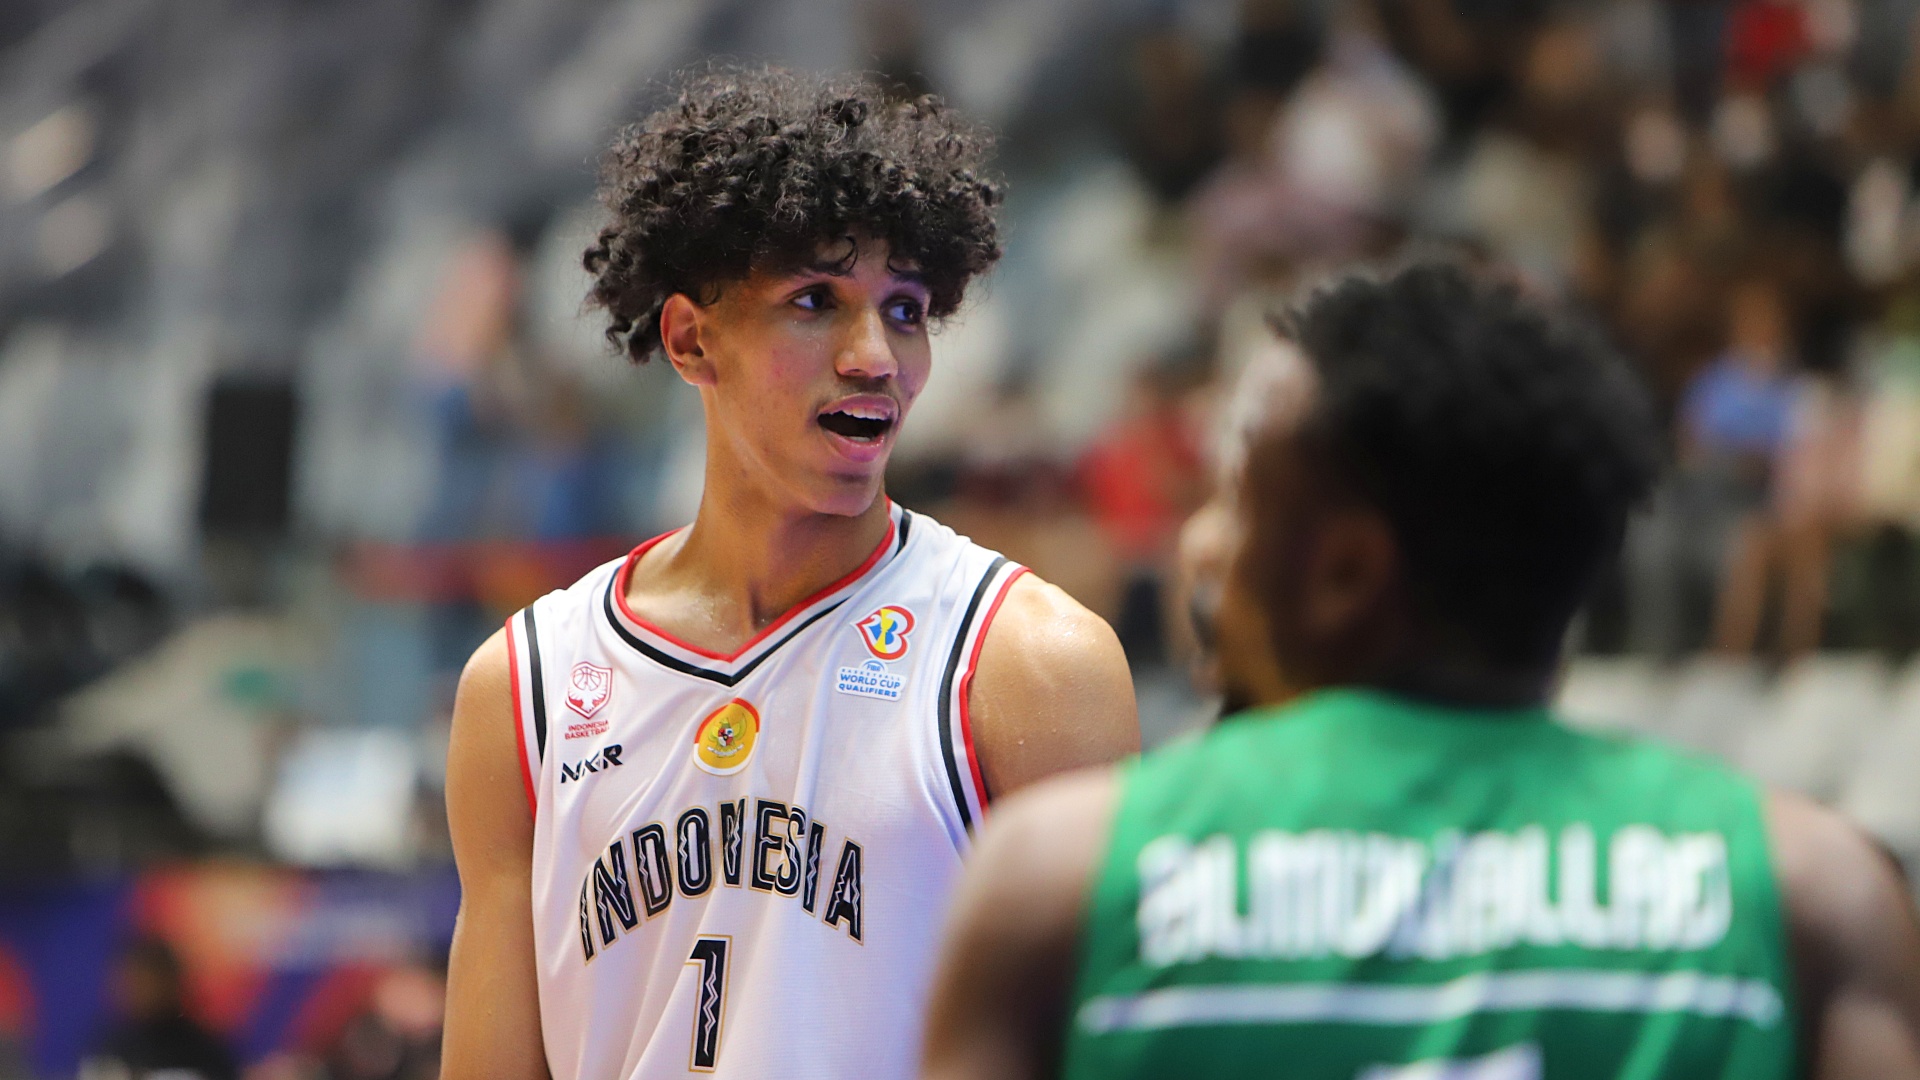 Derrick Michael Butuh Dukungan Indonesia, Calon Peraih FIBA Young Player of the Year 2022